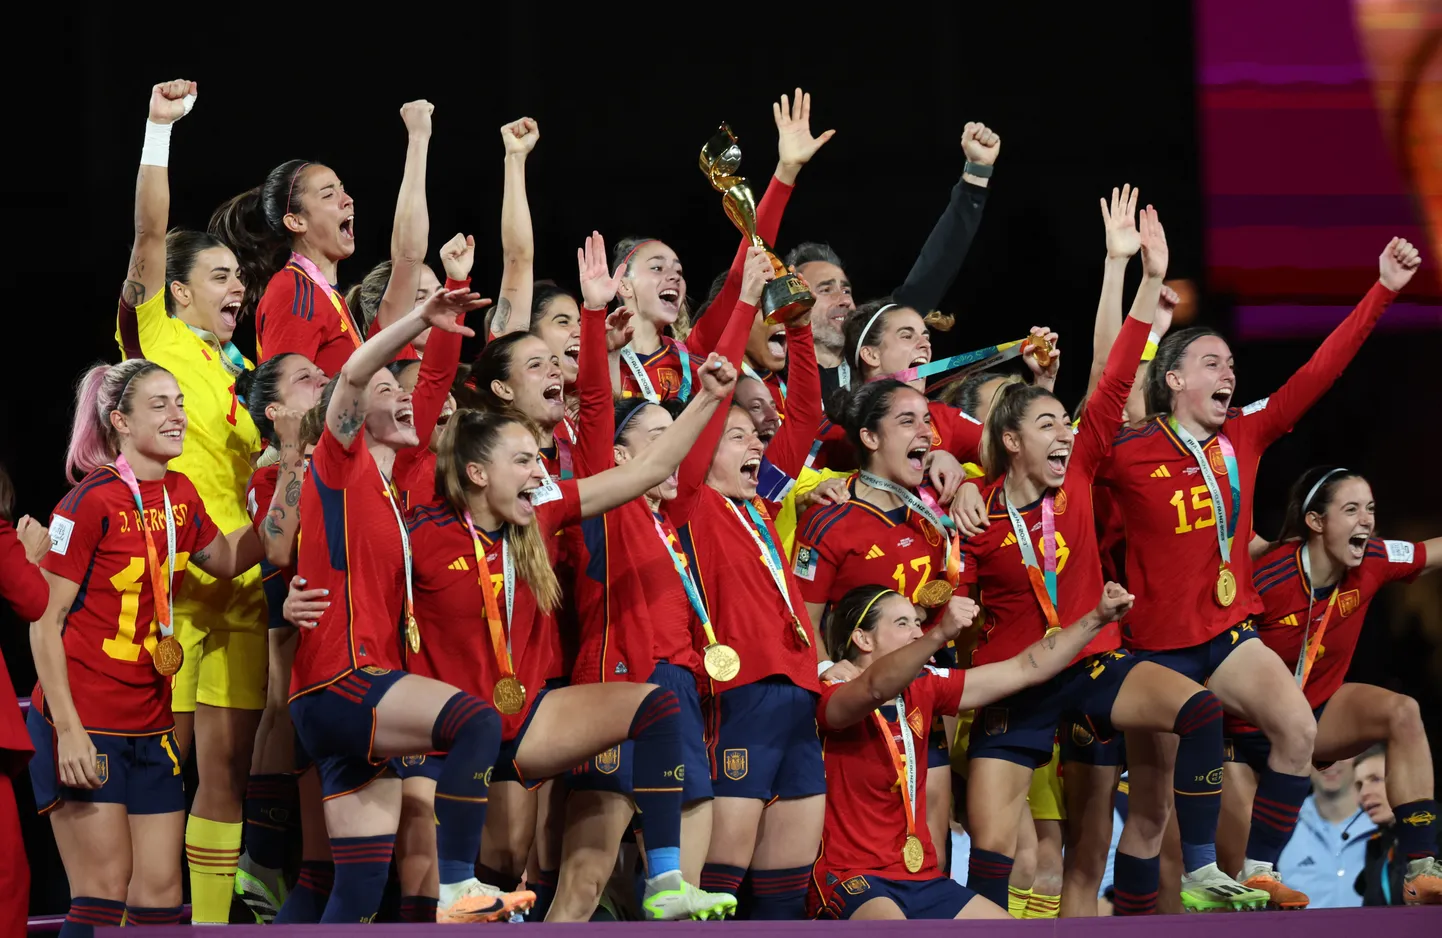 Hispaania jalgpallikoondis tähistamas MM-tiitlit.